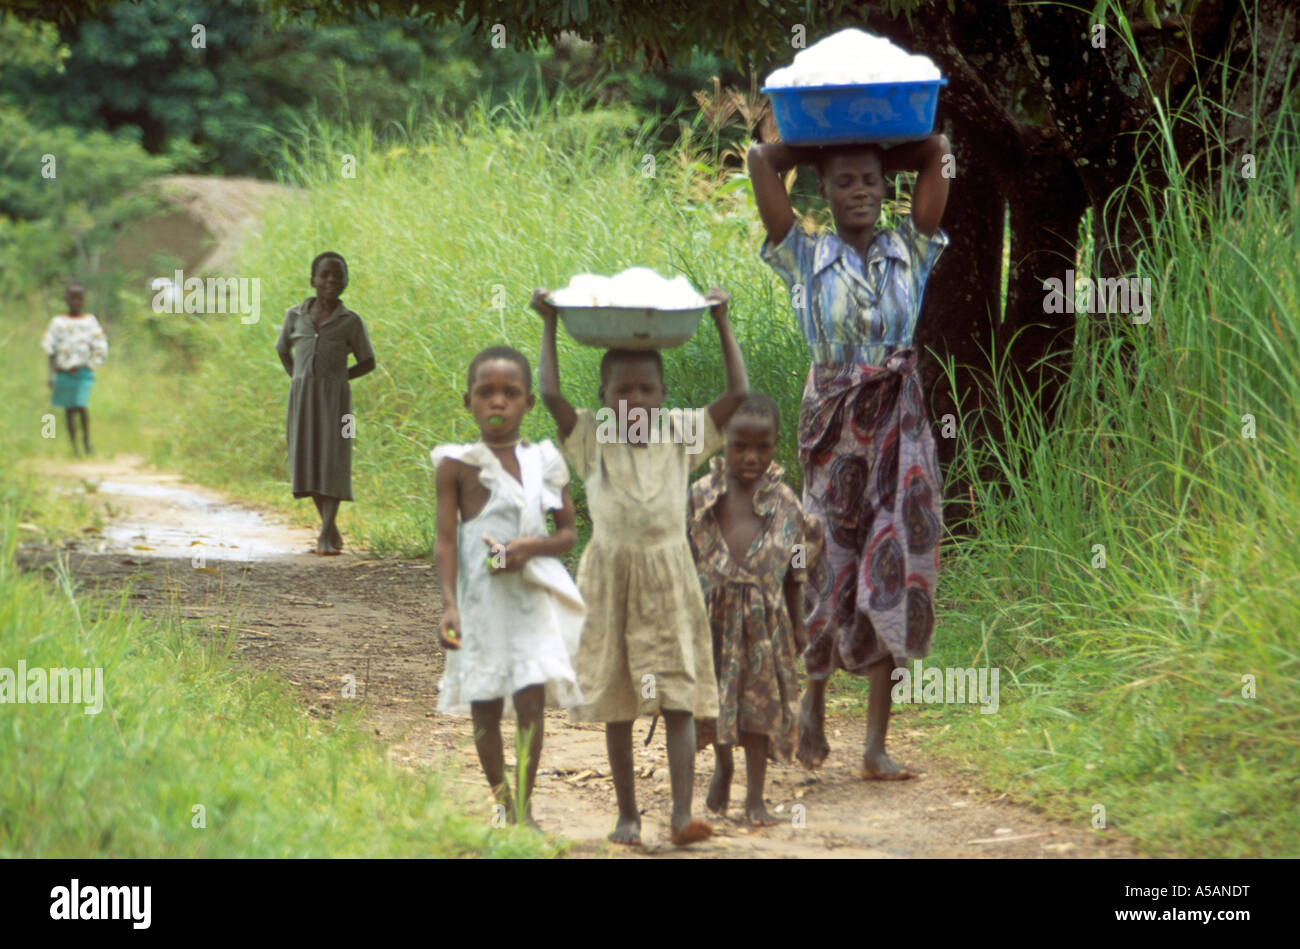 Mère et enfants transportant des seaux sur la tête, le Malawi, l'Afrique Banque D'Images